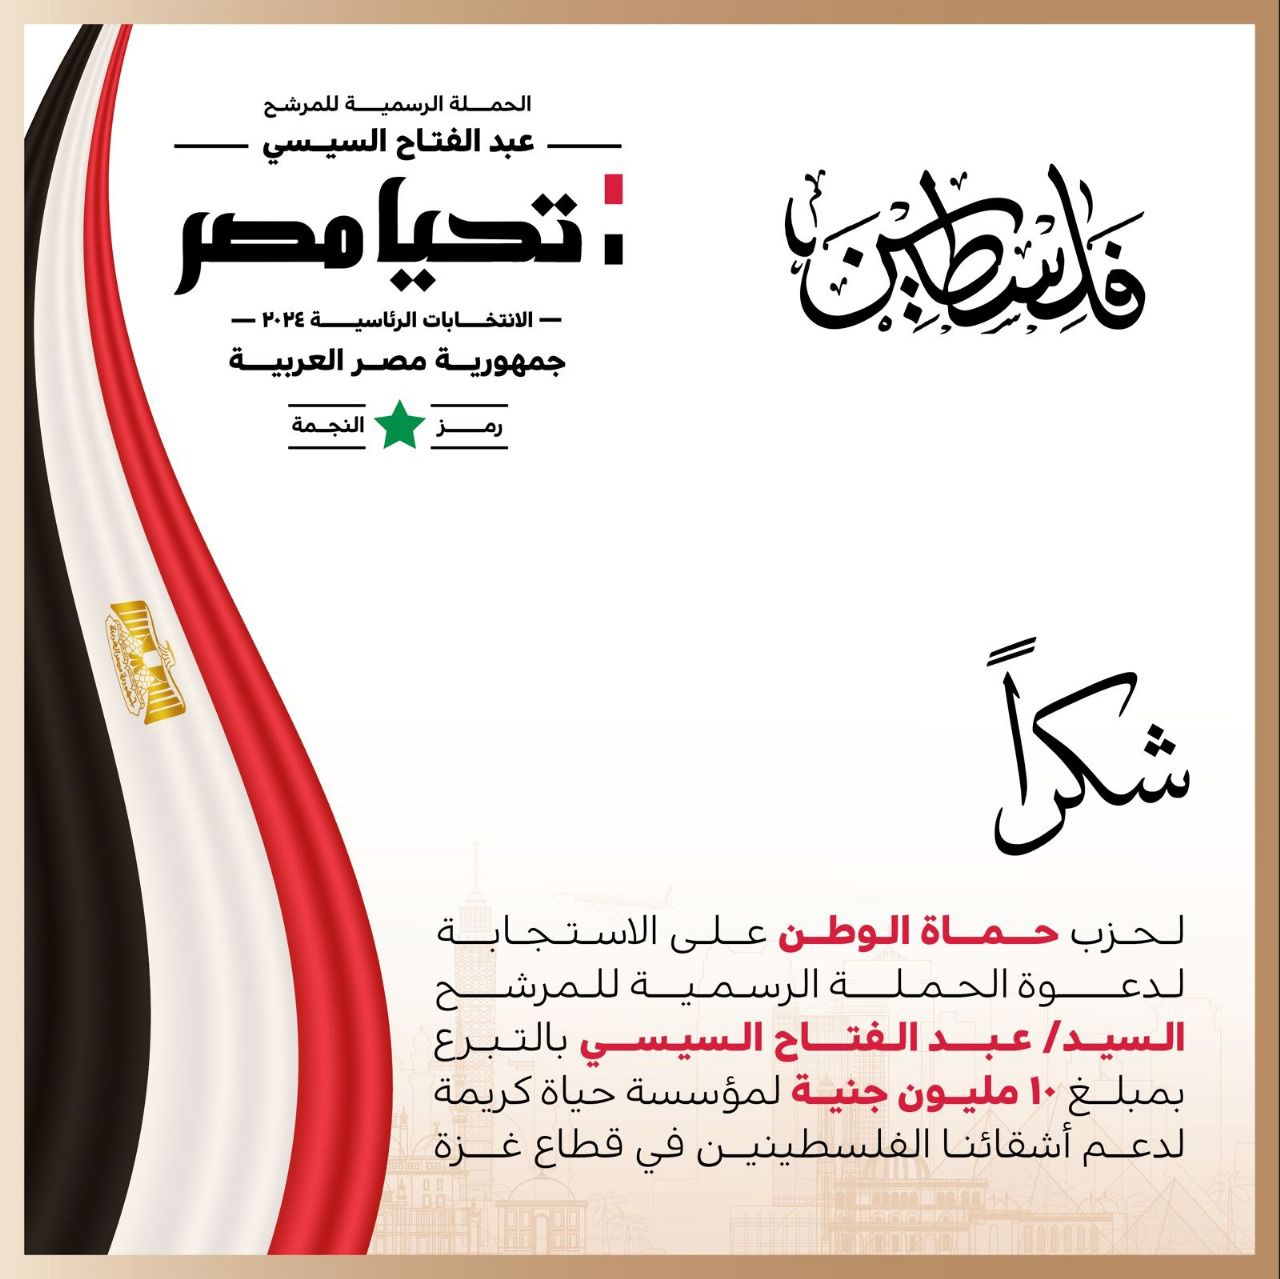 الحملة الرسمية للمرشح الرئاسي عبد الفتاح السيسي تشكر حزب حماة الوطن